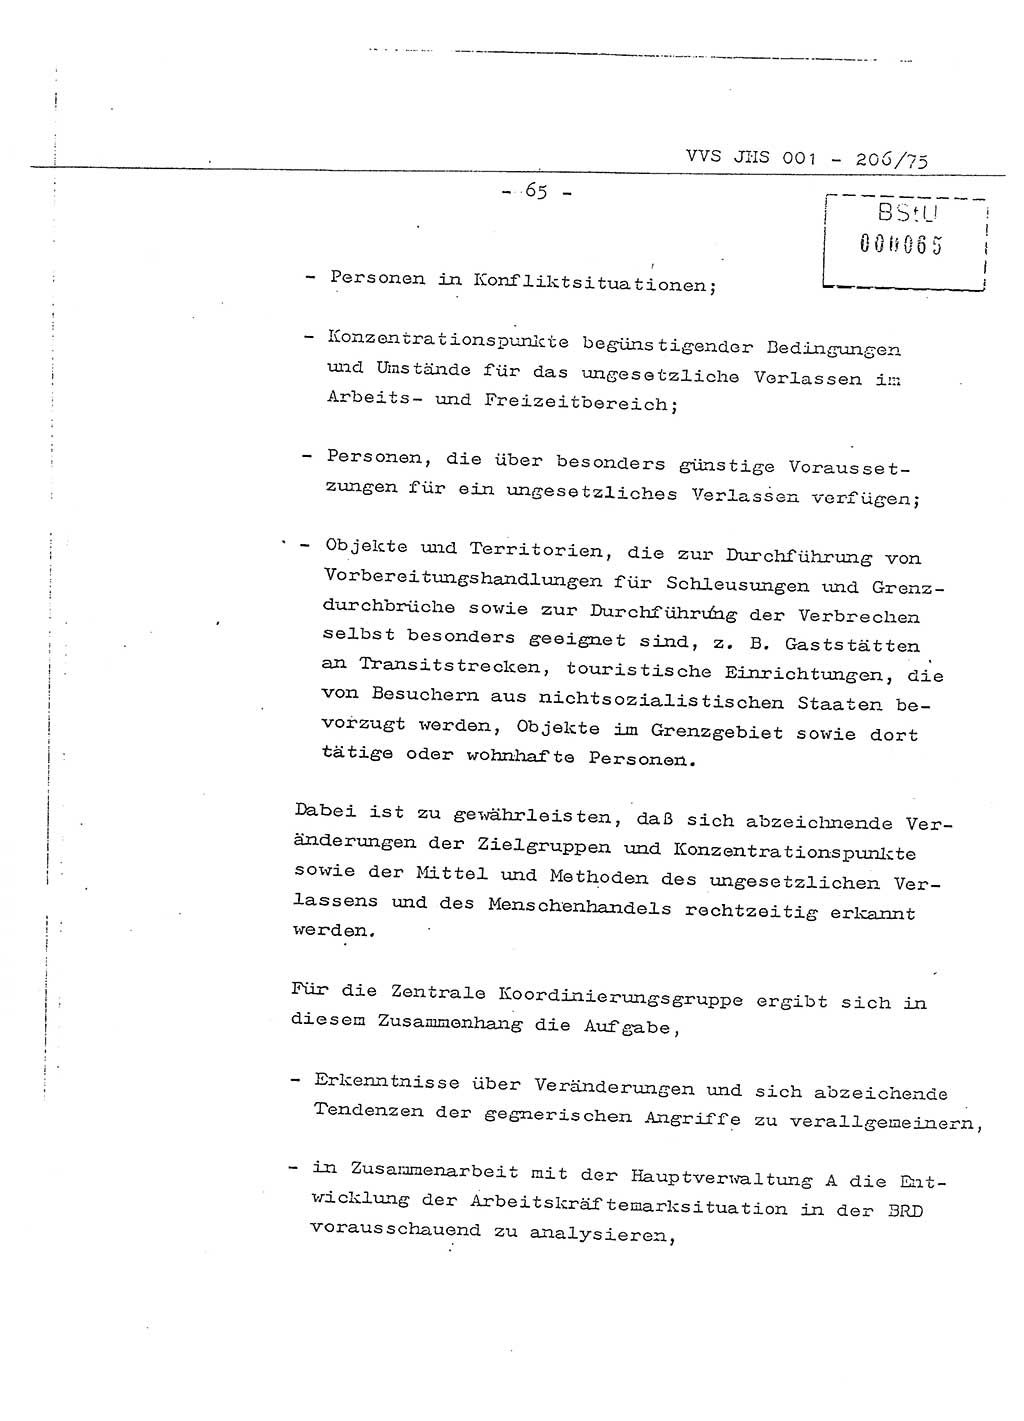 Dissertation Generalmajor Manfred Hummitzsch (Leiter der BV Leipzig), Generalmajor Heinz Fiedler (HA Ⅵ), Oberst Rolf Fister (HA Ⅸ), Ministerium für Staatssicherheit (MfS) [Deutsche Demokratische Republik (DDR)], Juristische Hochschule (JHS), Vertrauliche Verschlußsache (VVS) 001-206/75, Potsdam 1975, Seite 65 (Diss. MfS DDR JHS VVS 001-206/75 1975, S. 65)